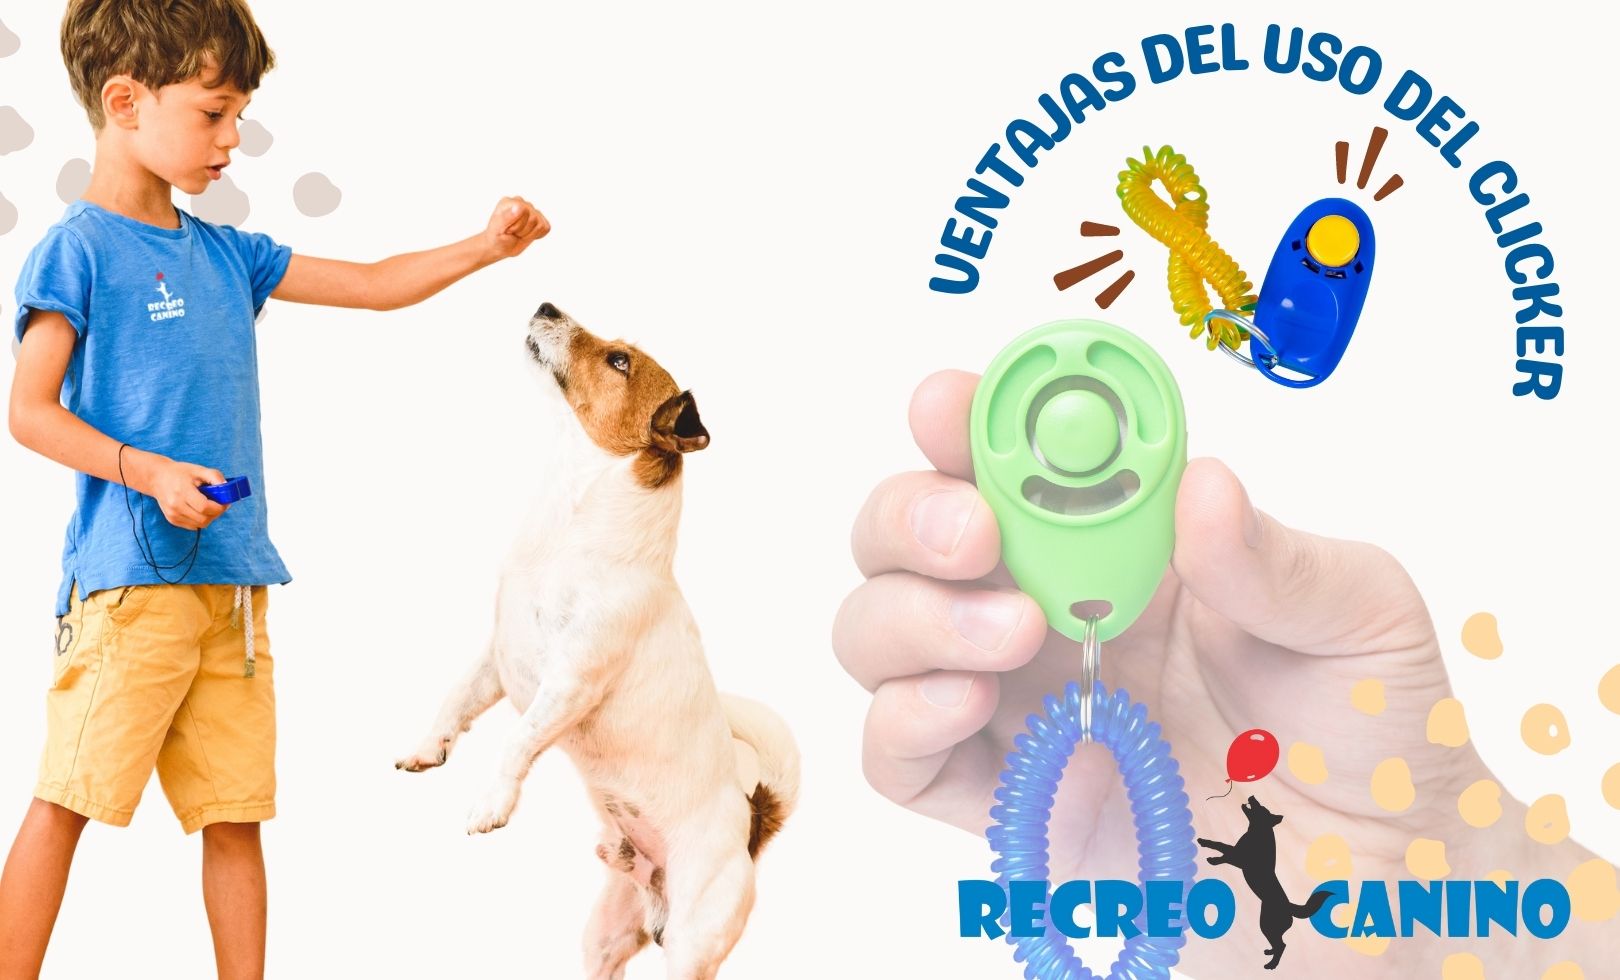 Ventajas del uso del clicker por recreo canino paseo de perros de ciudad